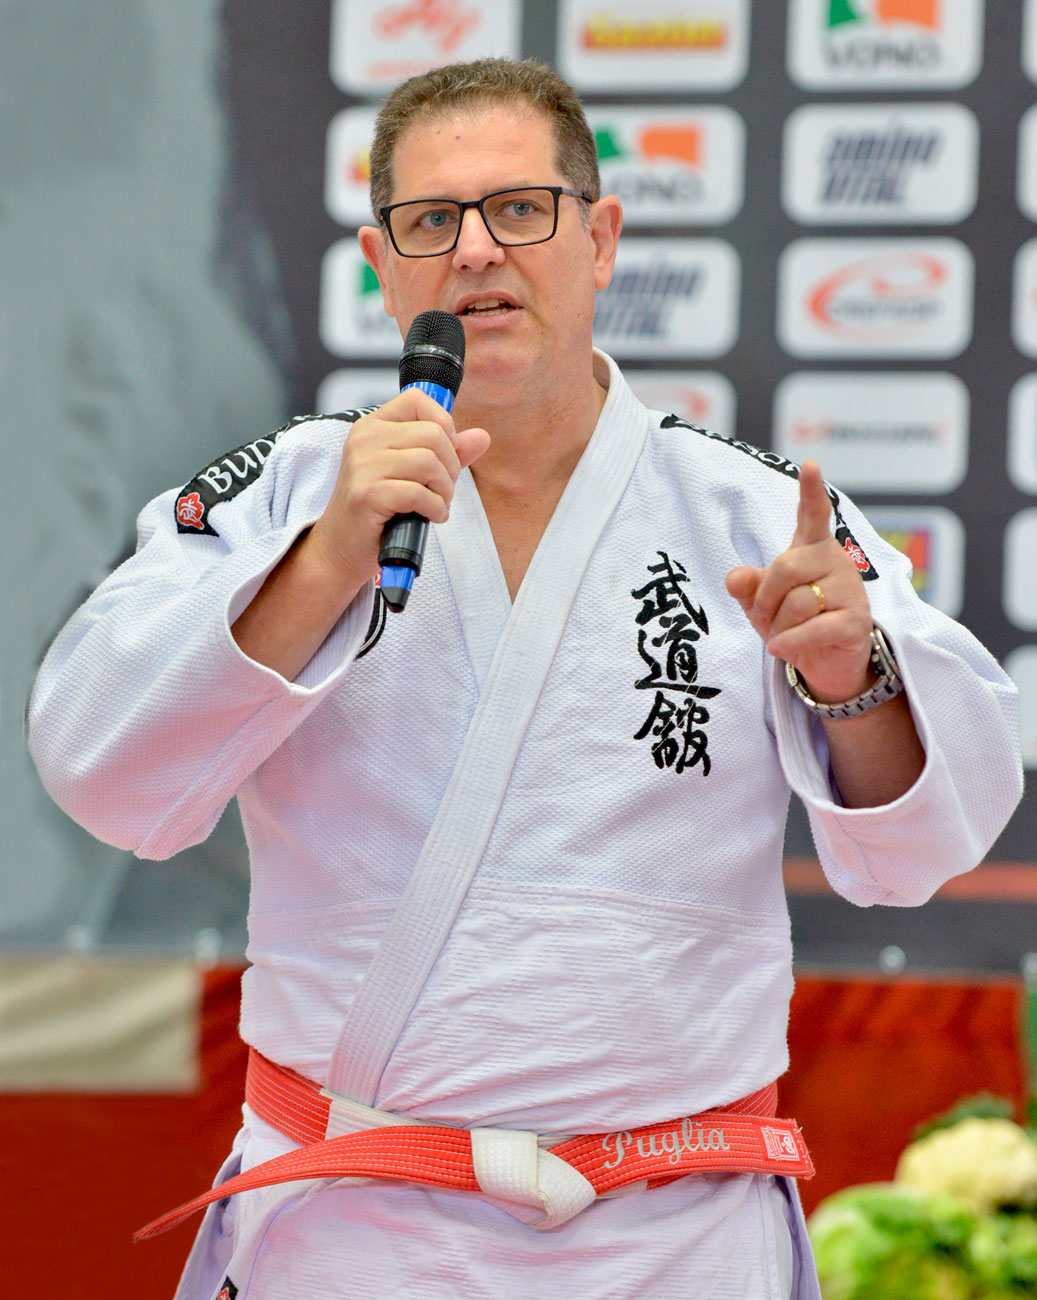 Um homem com uniforme de karatê participando da 72ª edição do Torneio Budokan, mostrando tradição e história no segundo ano dessa parceria transformadora.